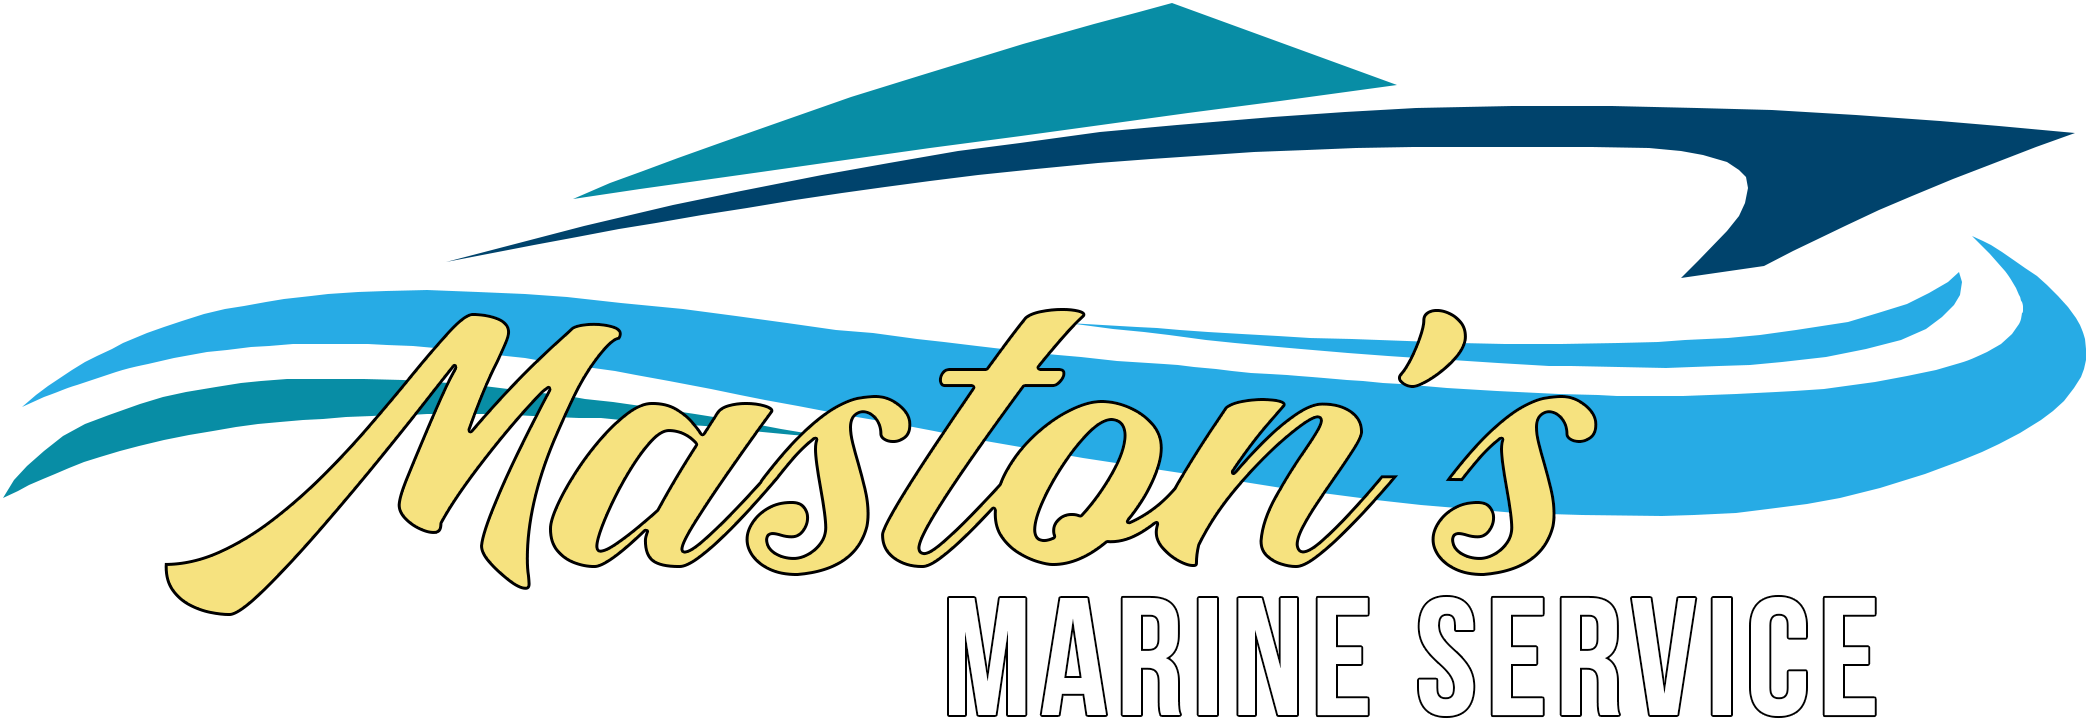 Maston Marine Service